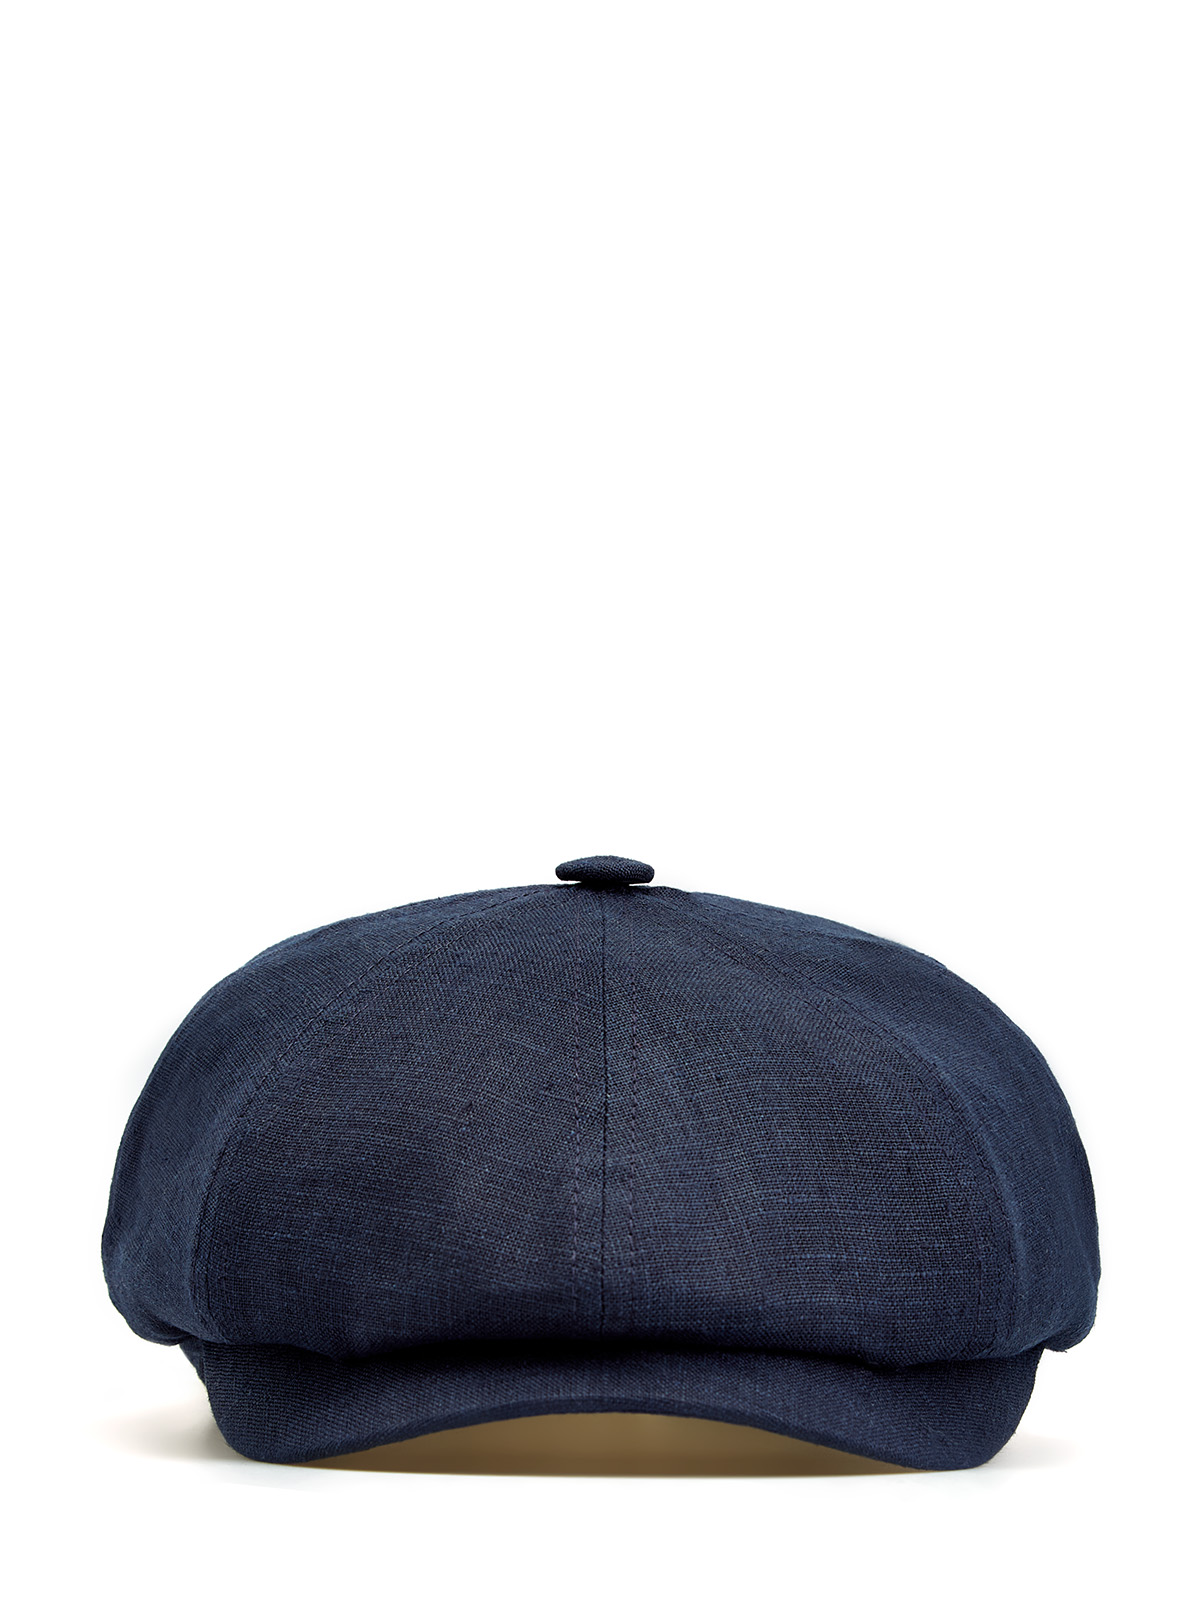 Регулируемая кепка-коппола из окрашенного вручную льна CUDGI, цвет синий, размер 60;59;58